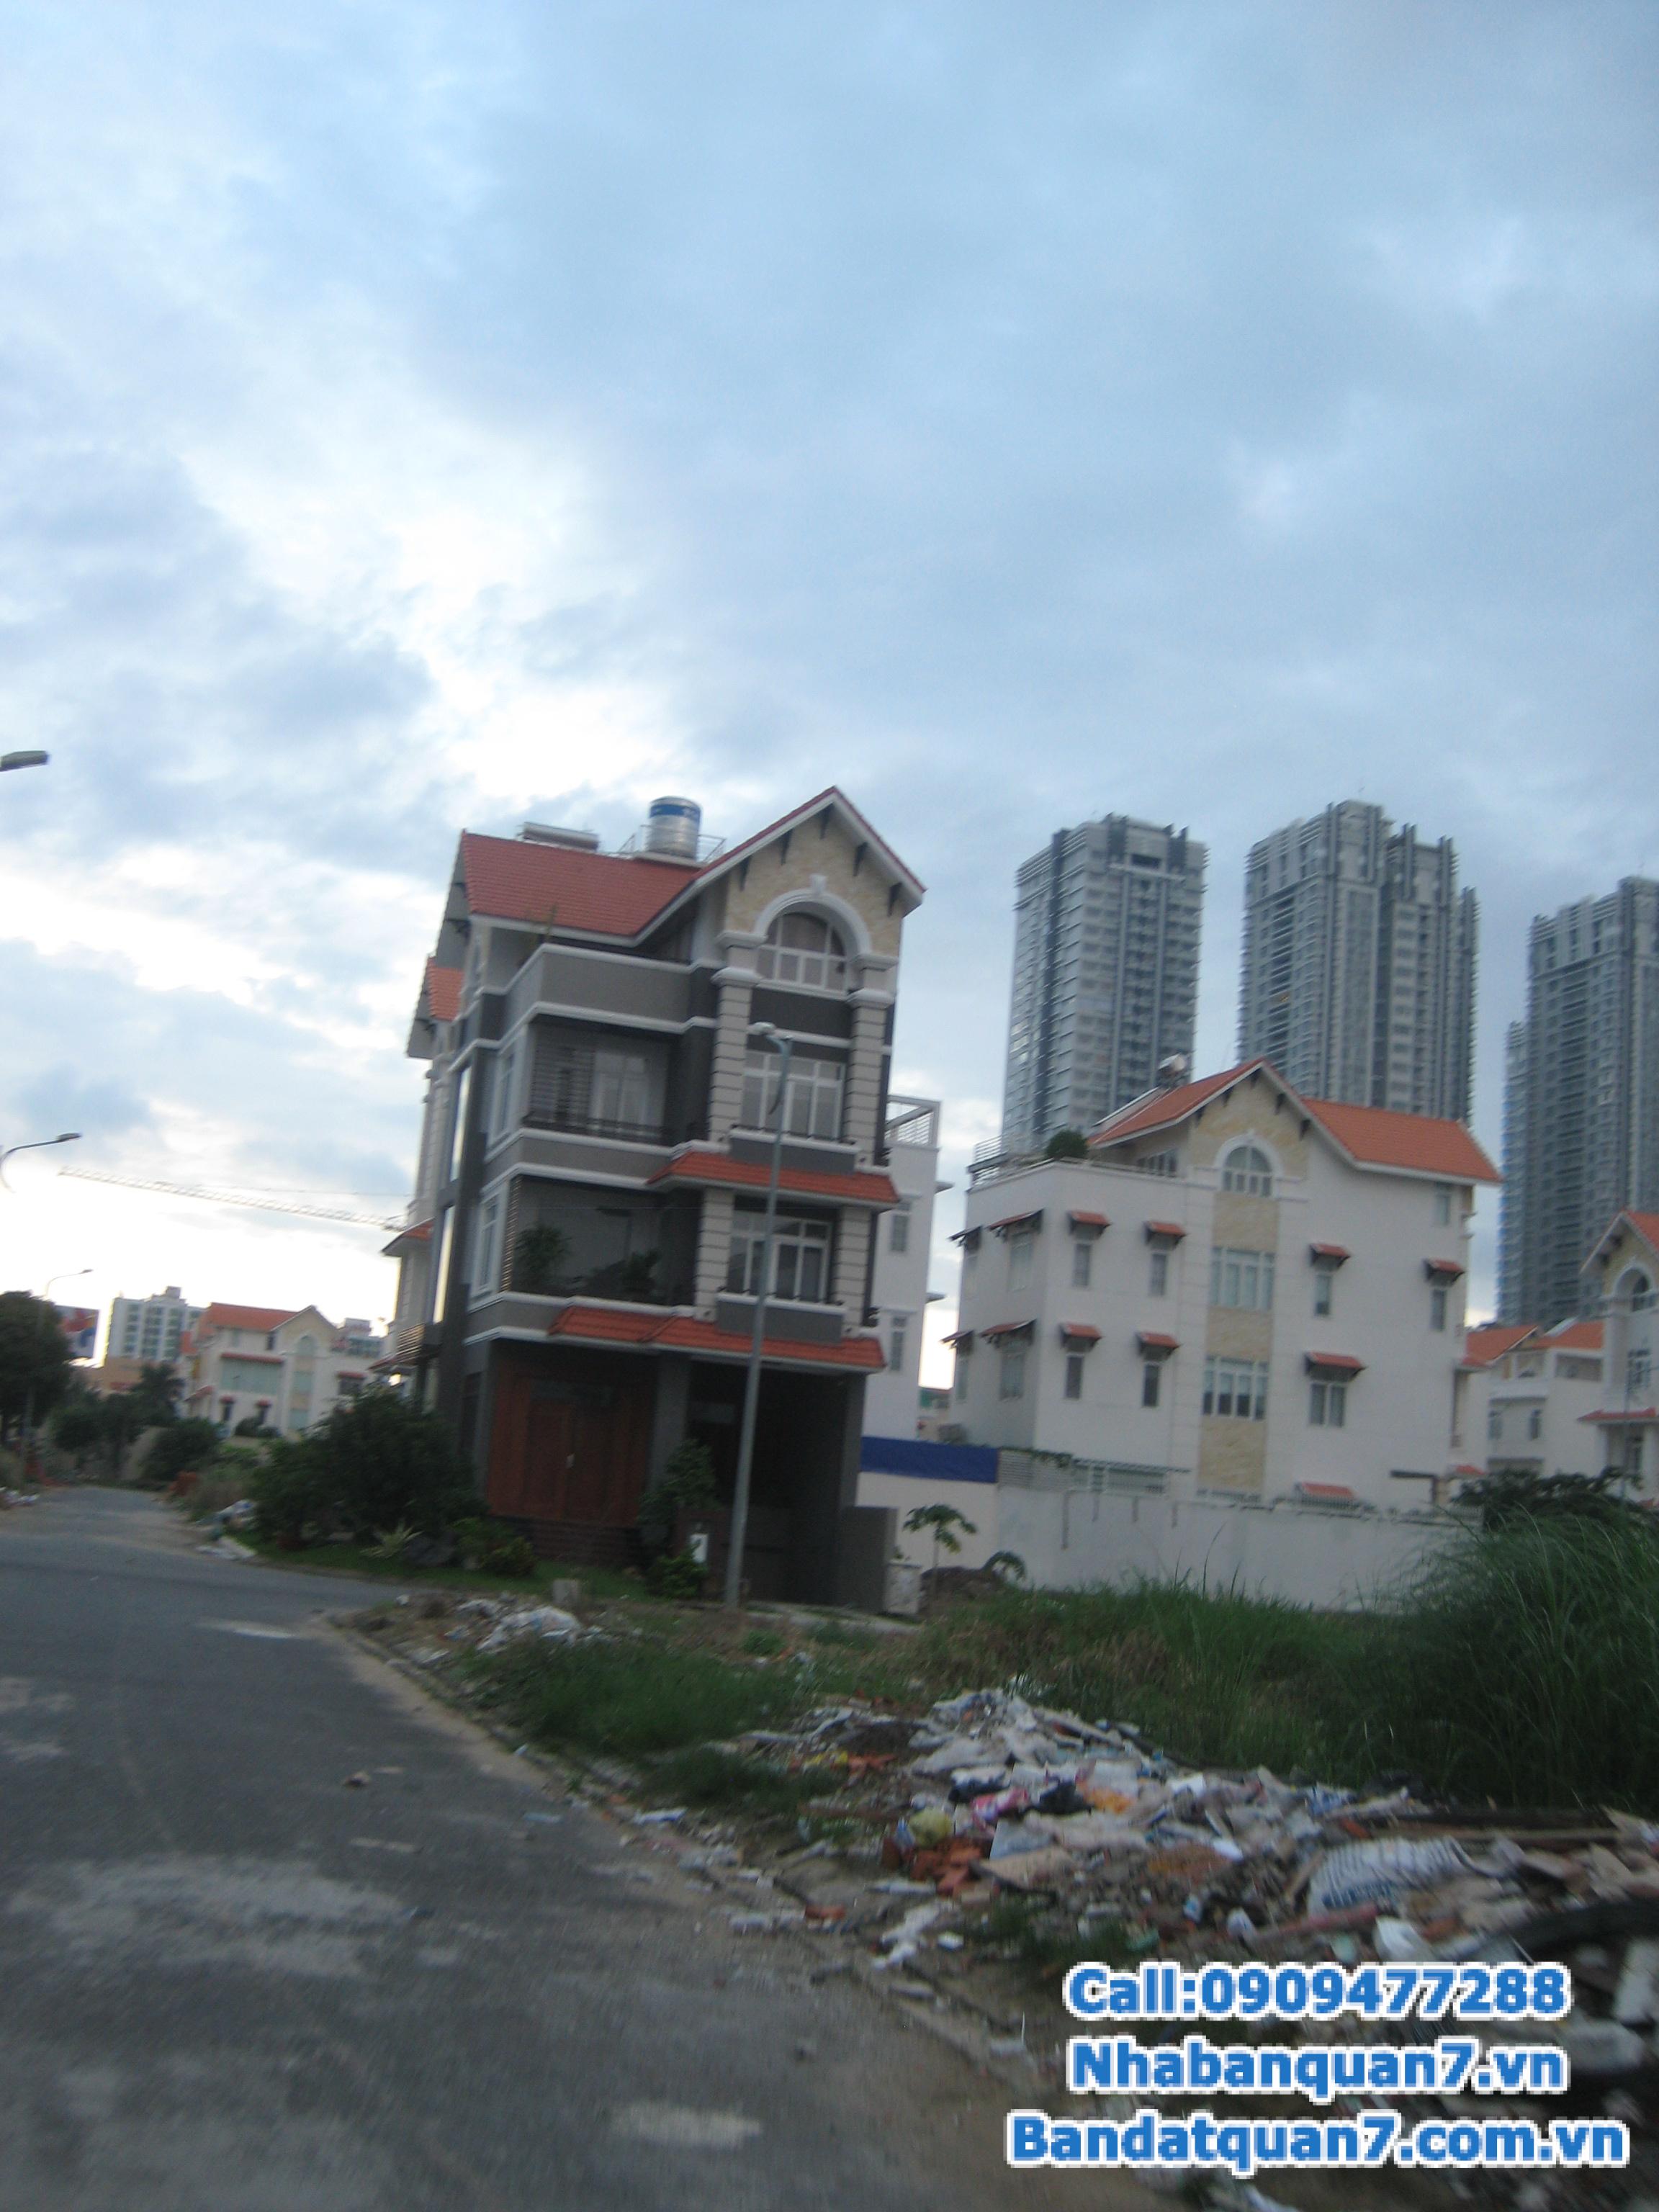 Bán nhiều lô đất biệt thự Him Lam Kênh Tẻ quận 7, DT 10 x 20m, giá 65 triệu/m2